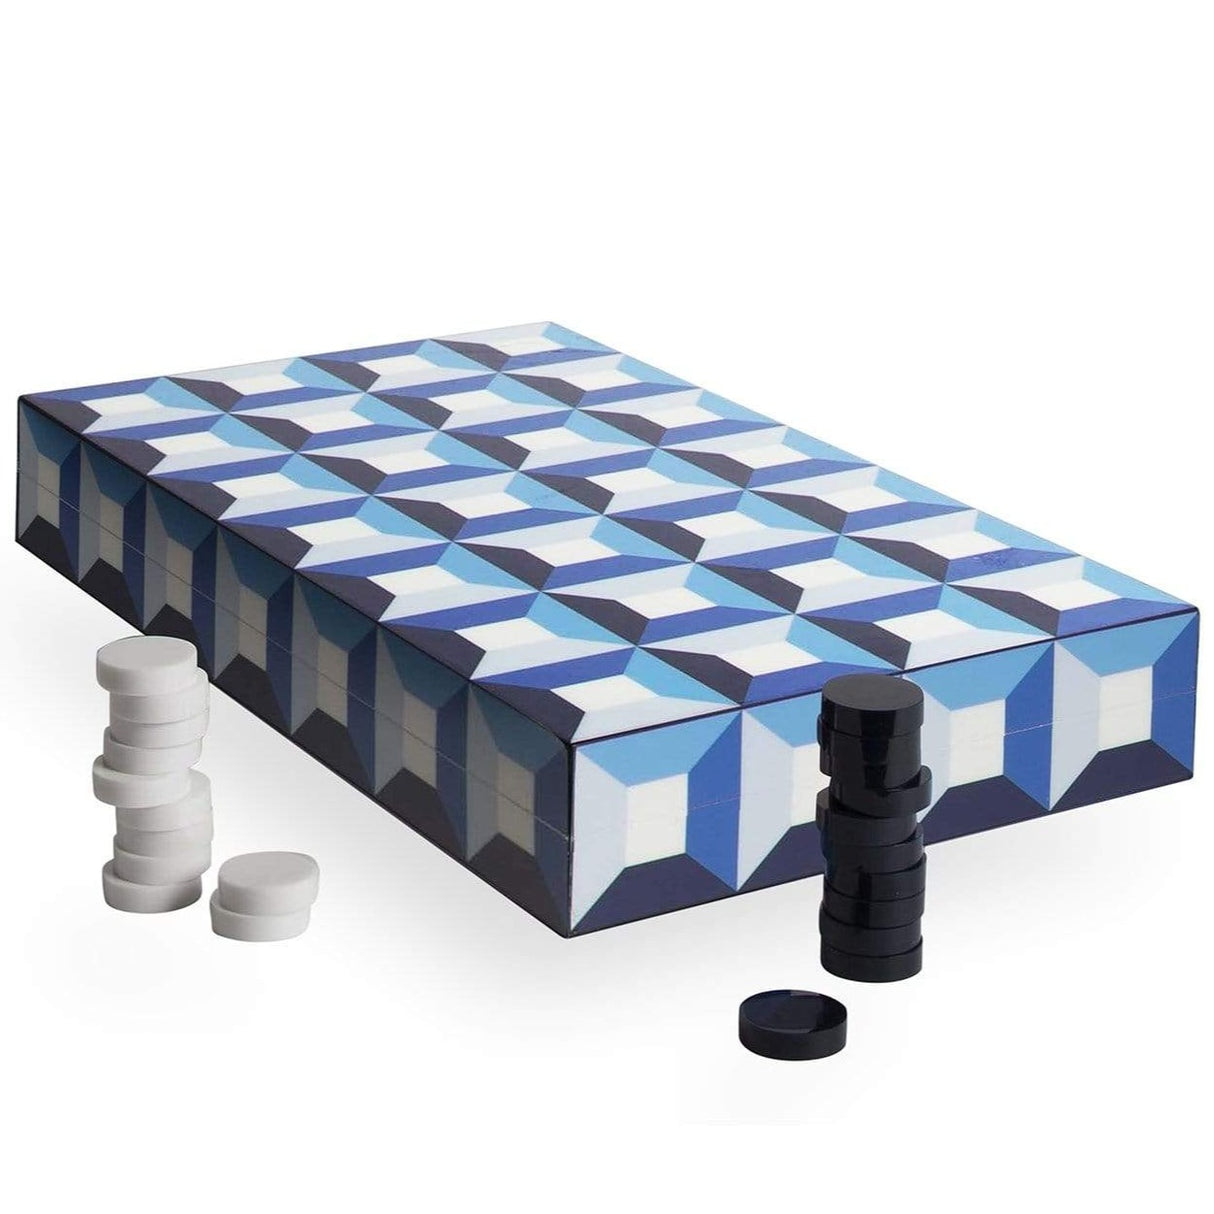 Jonathan Adler Sorrento Backgammon Set Decor jonathan-adler-29778 00812205034632